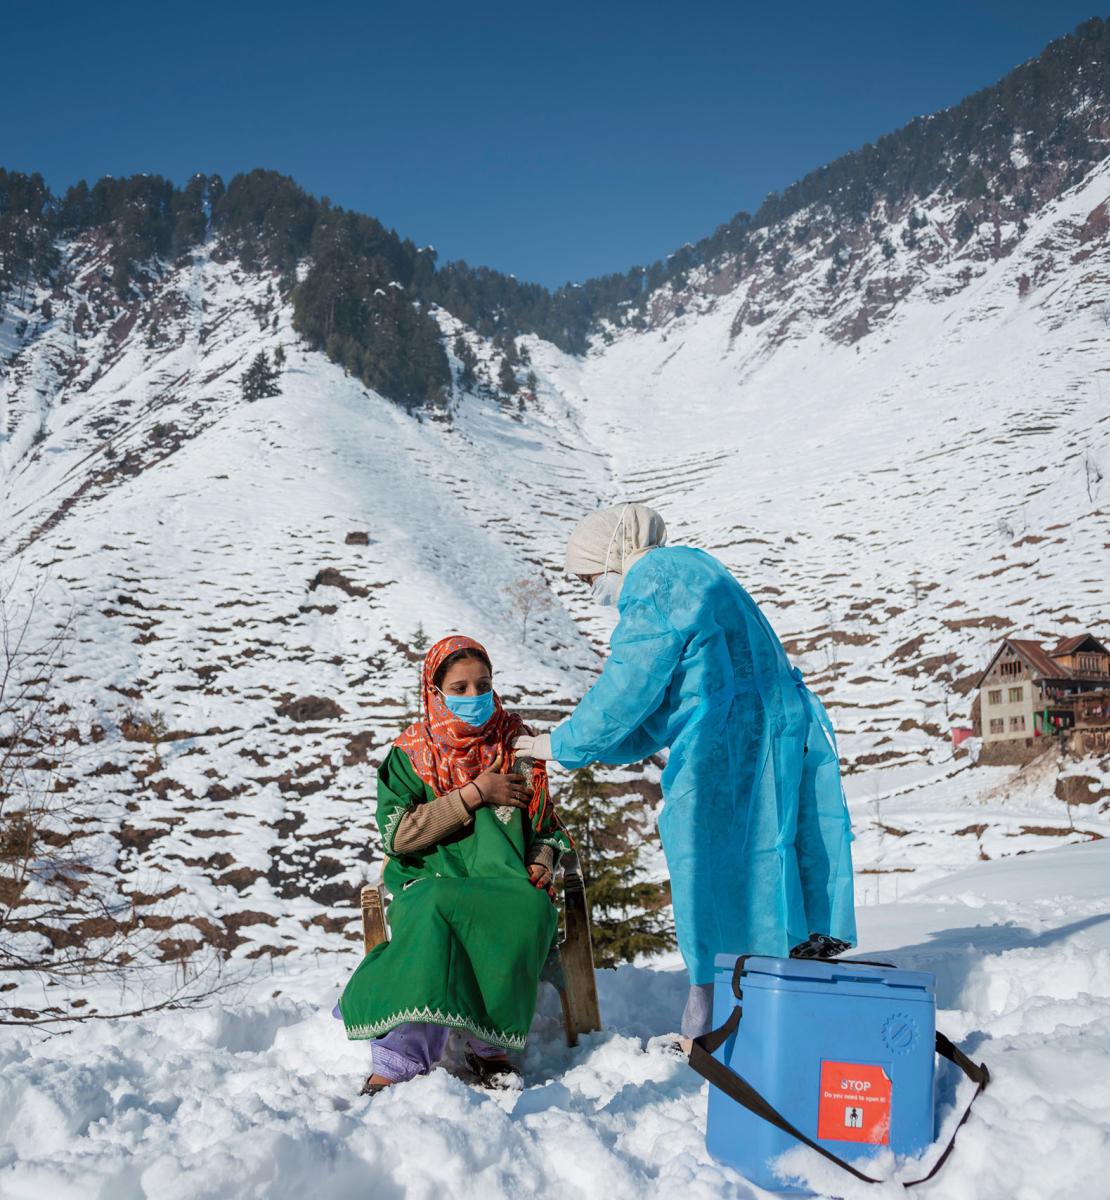 Une femme vêtue d’une robe verte se fait vacciner contre la COVID-19, près d’une glacière, par une agente de santé vêtue d’une blouse de protection bleue, au sommet d'une montagne enneigée, en Inde.